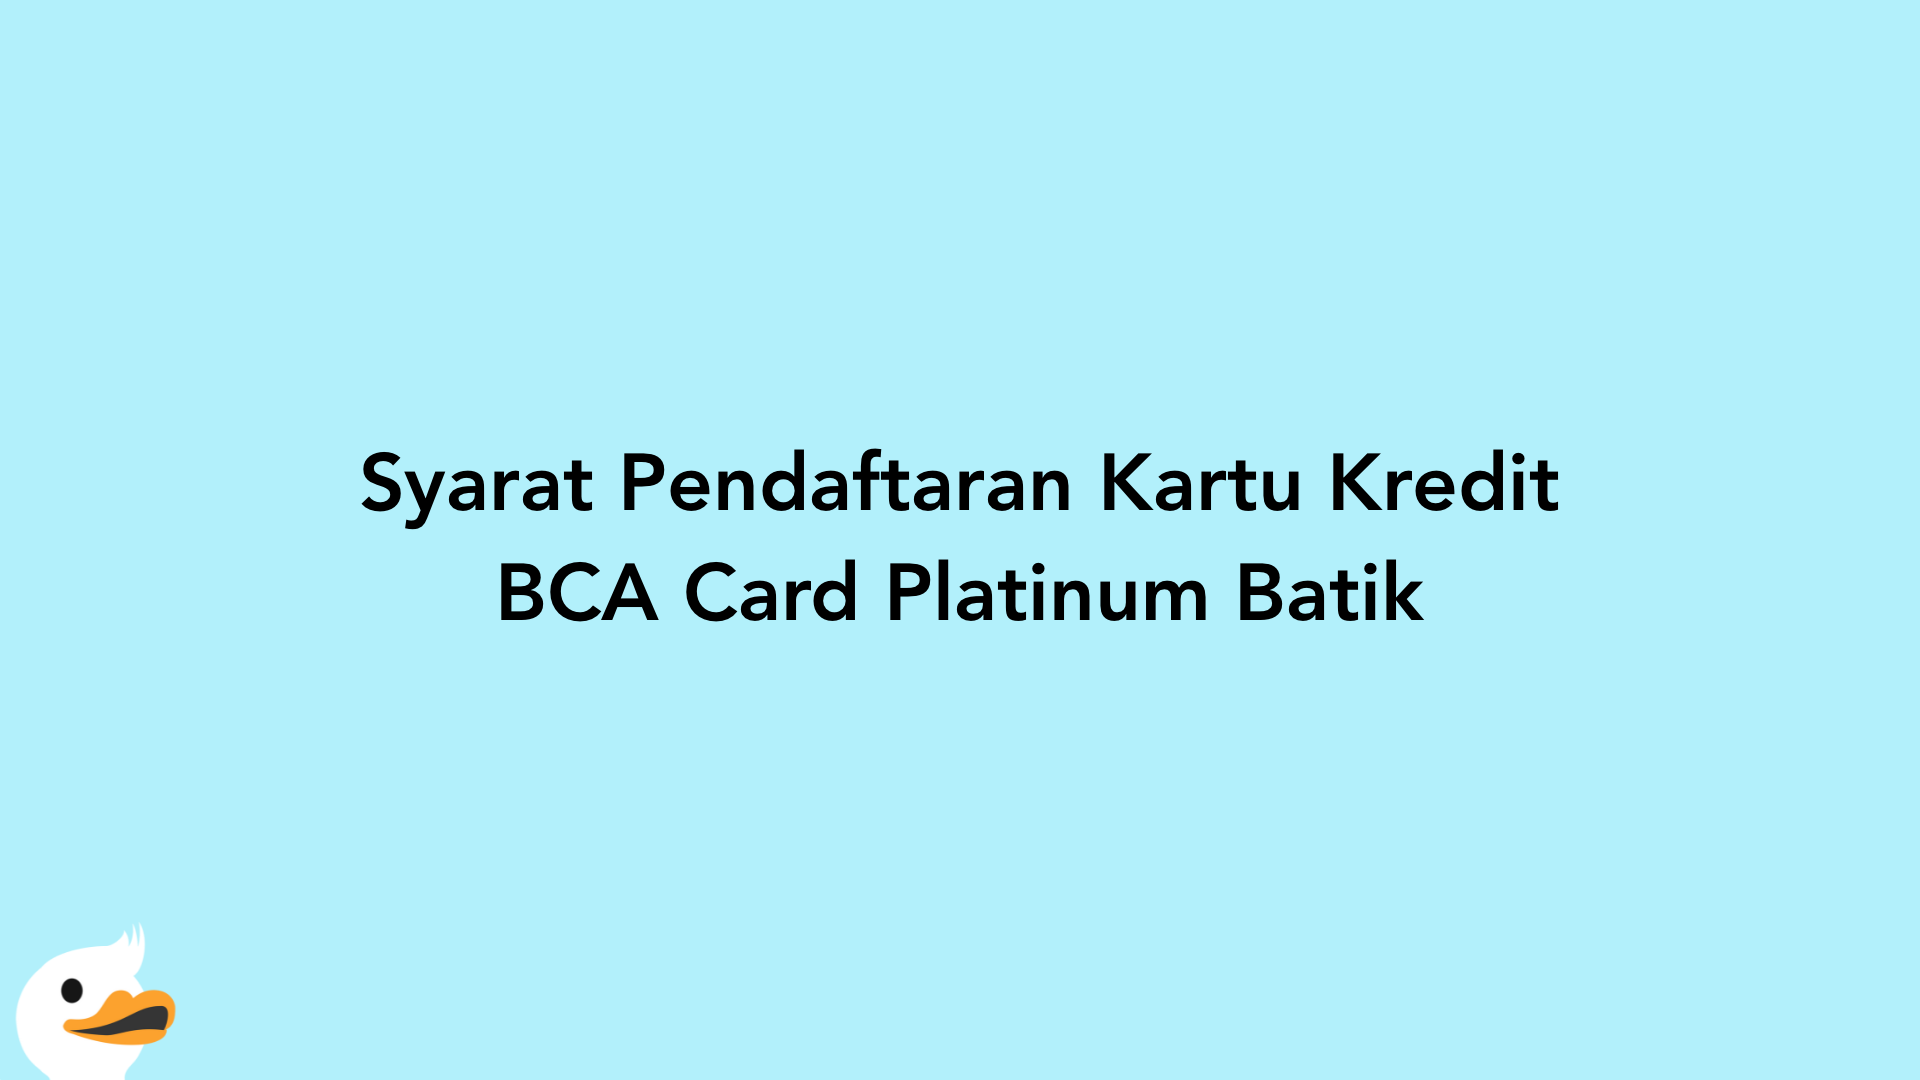 Syarat Pendaftaran Kartu Kredit BCA Card Platinum Batik